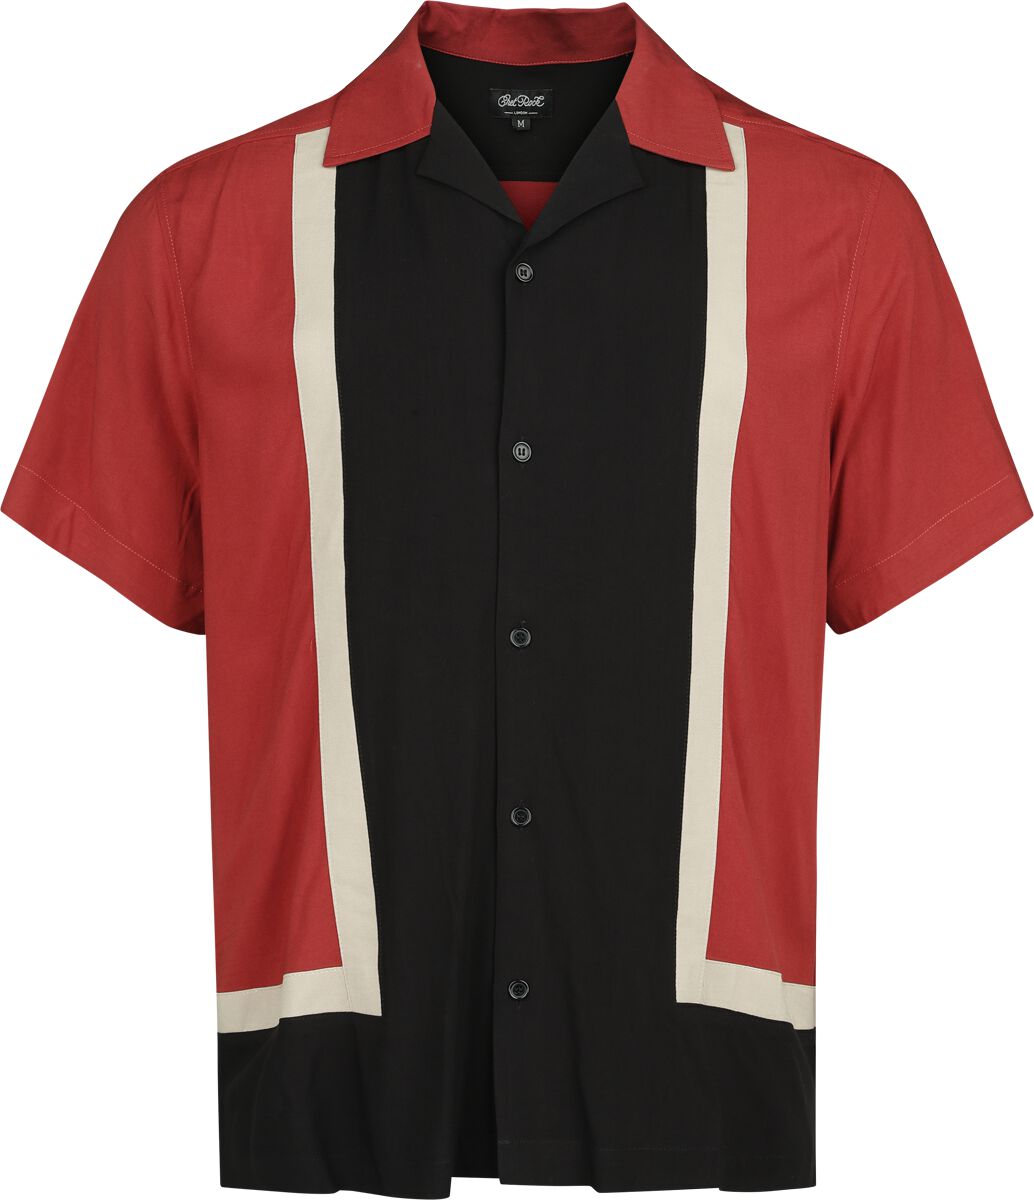 Chet Rock Walter Bowling Shirt Kurzarmhemd rot schwarz in S